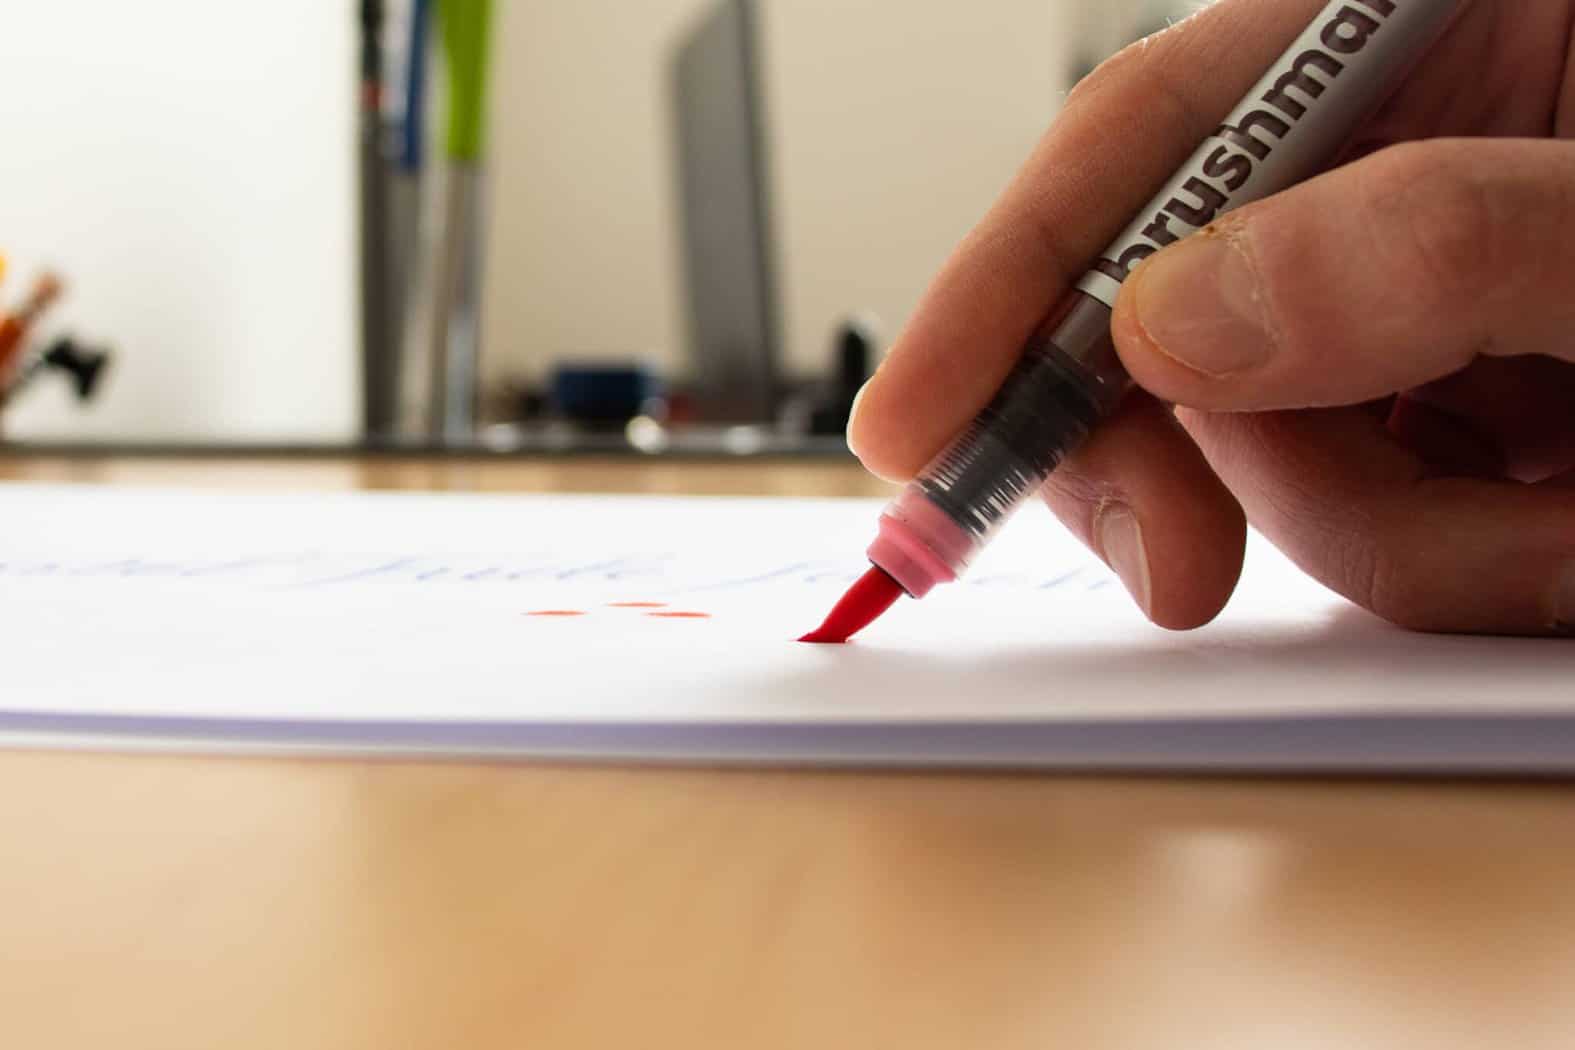 The Best Brush Pens For Beginners - Rayane Alvim - Hand Lettering &  Calligraphy